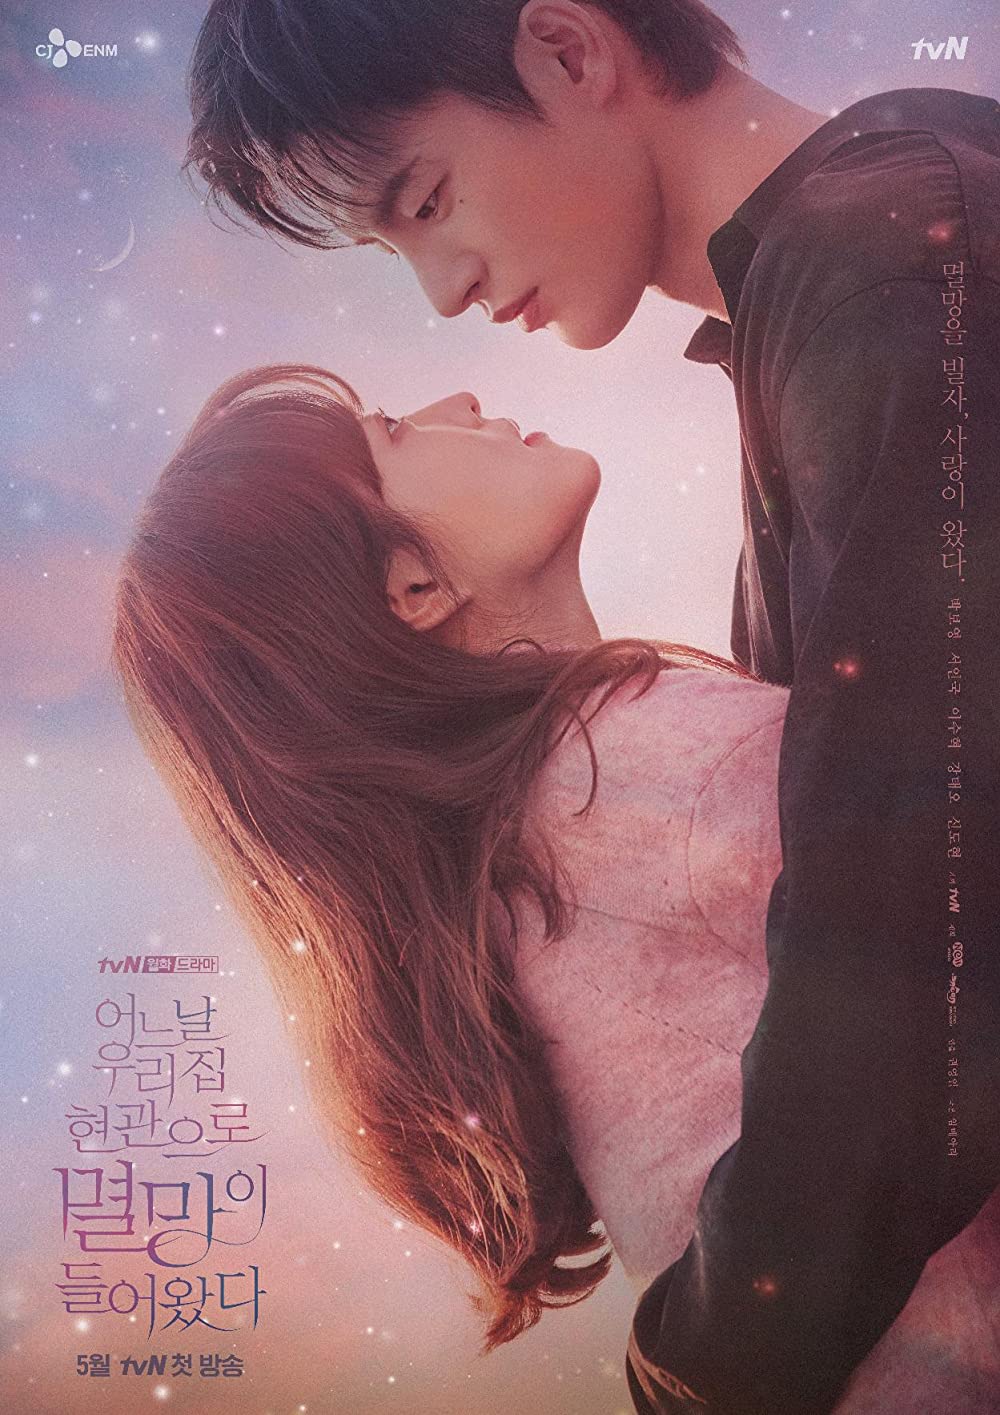 2020 korean romantic movies Best Romantic